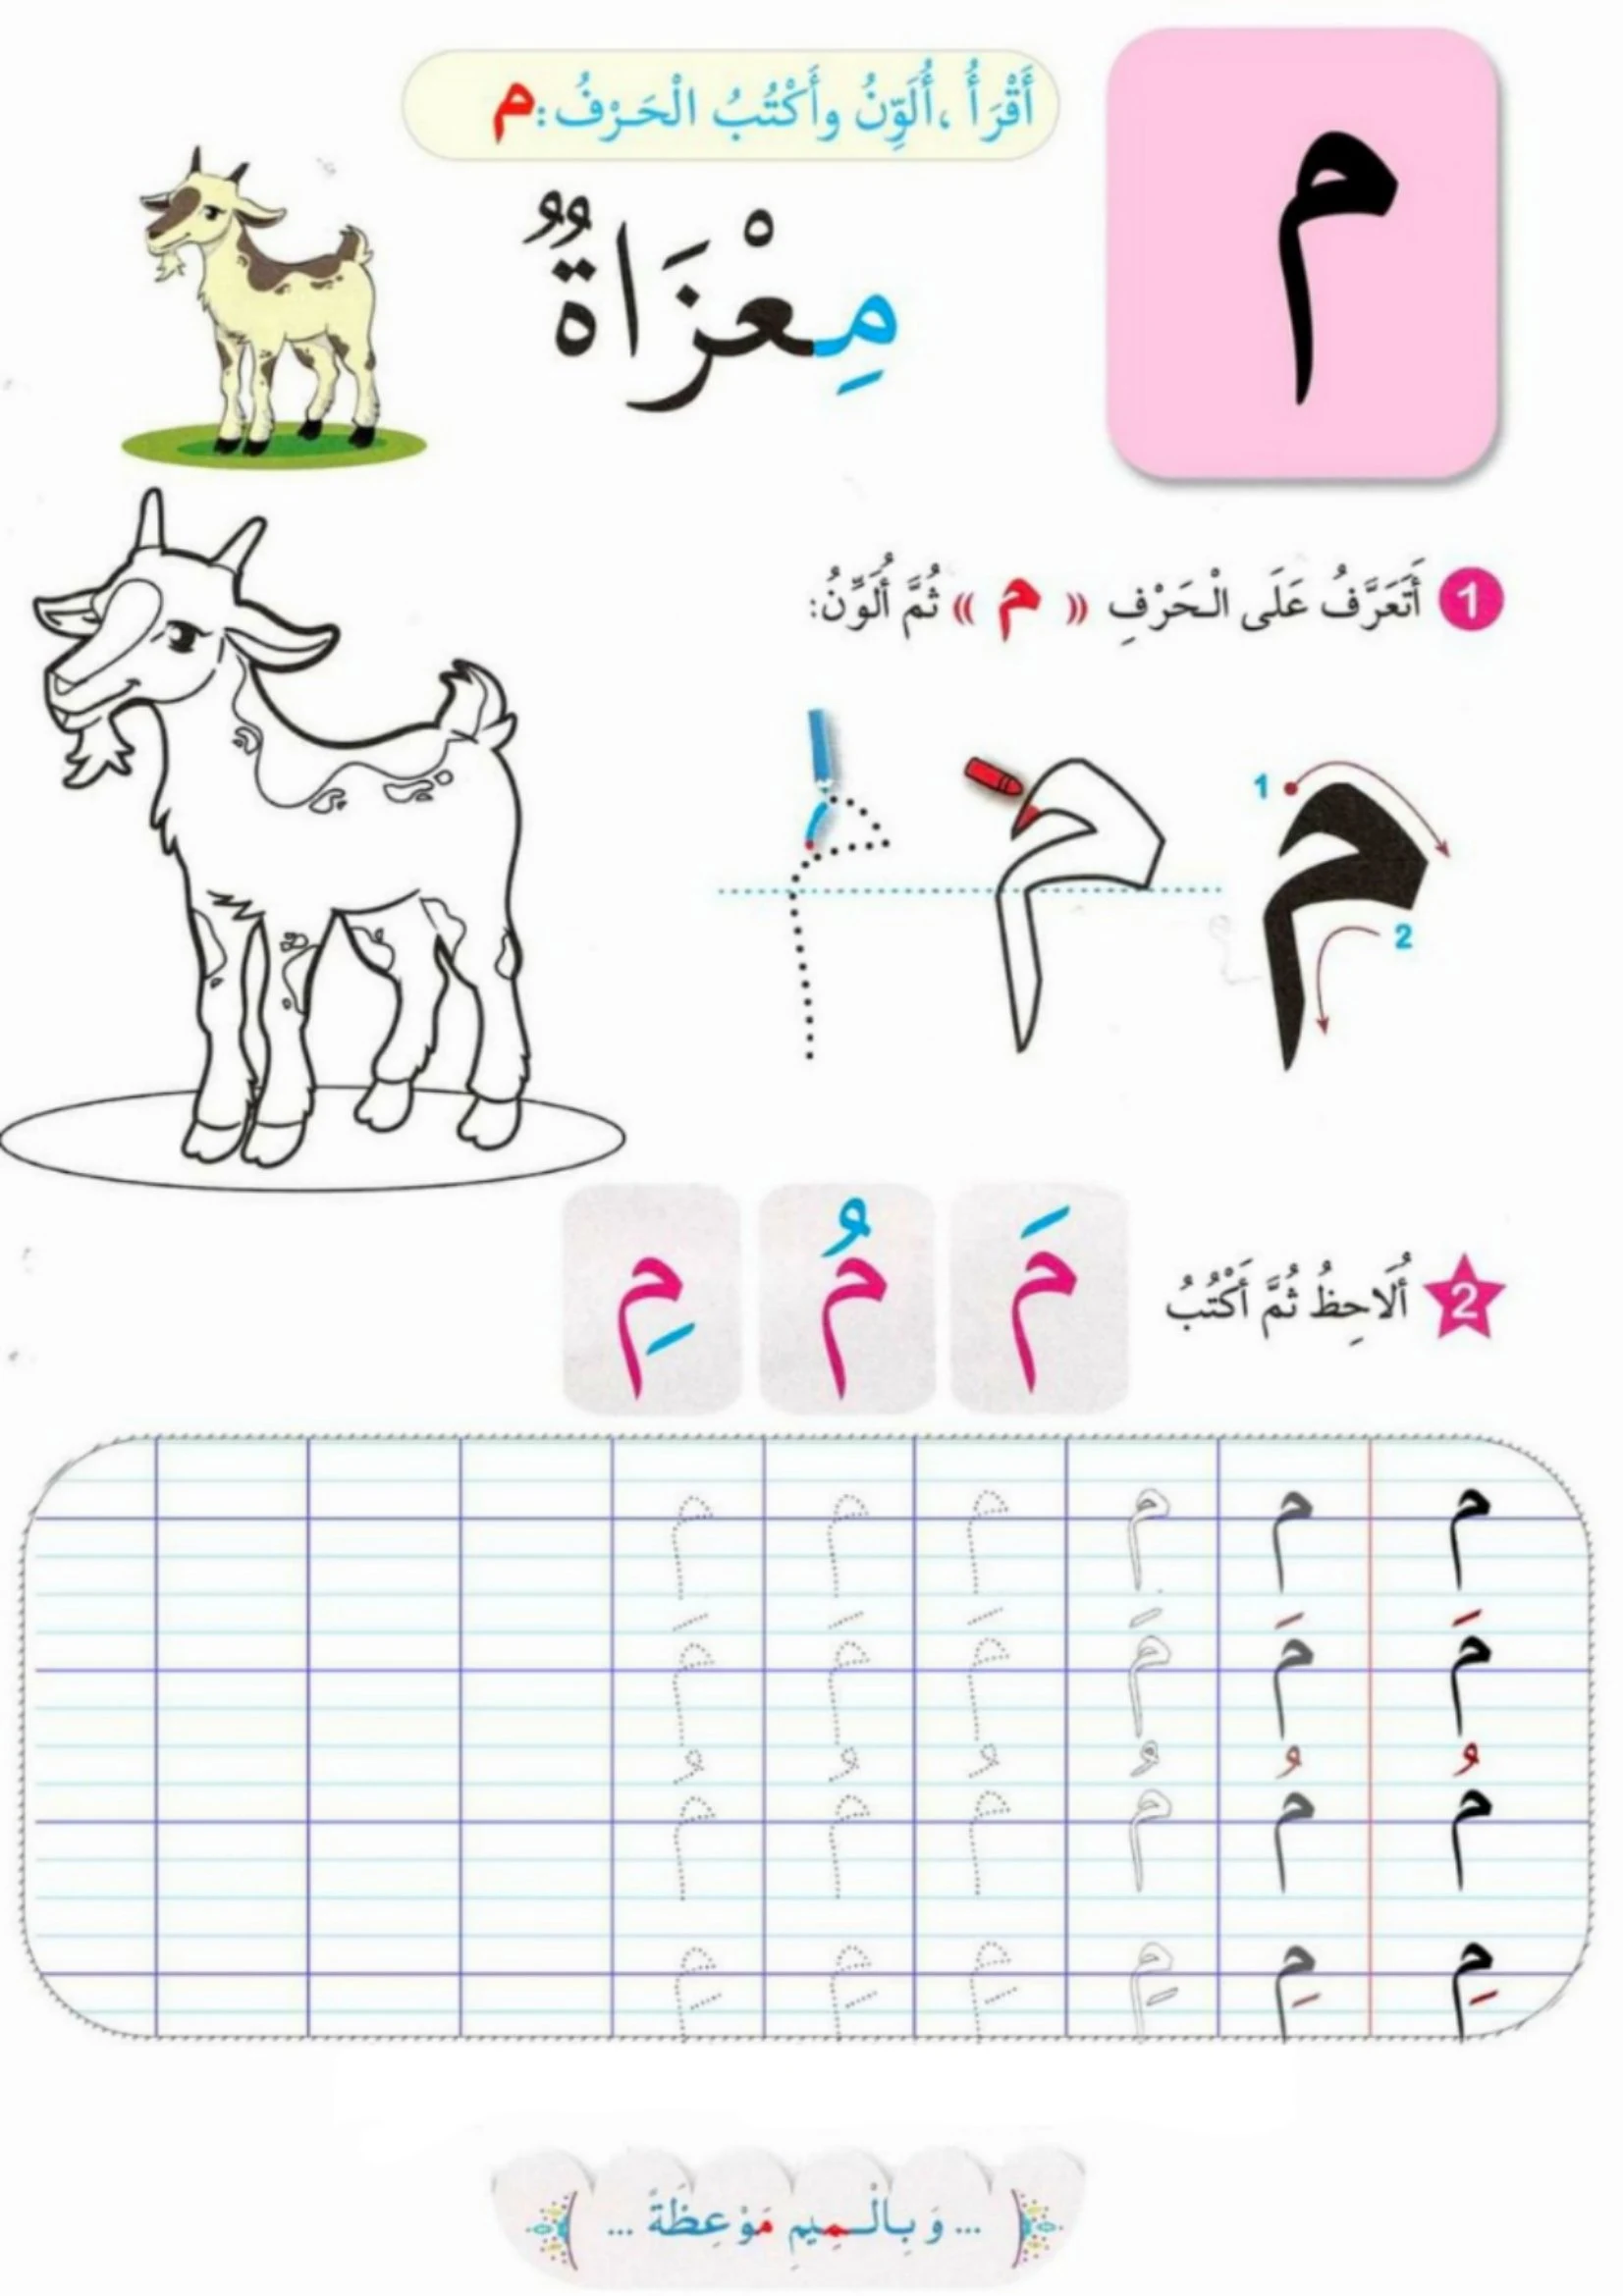 أوراق عمل الحروف الأبجدية حيوانات pdf تحميل مباشر مجاني